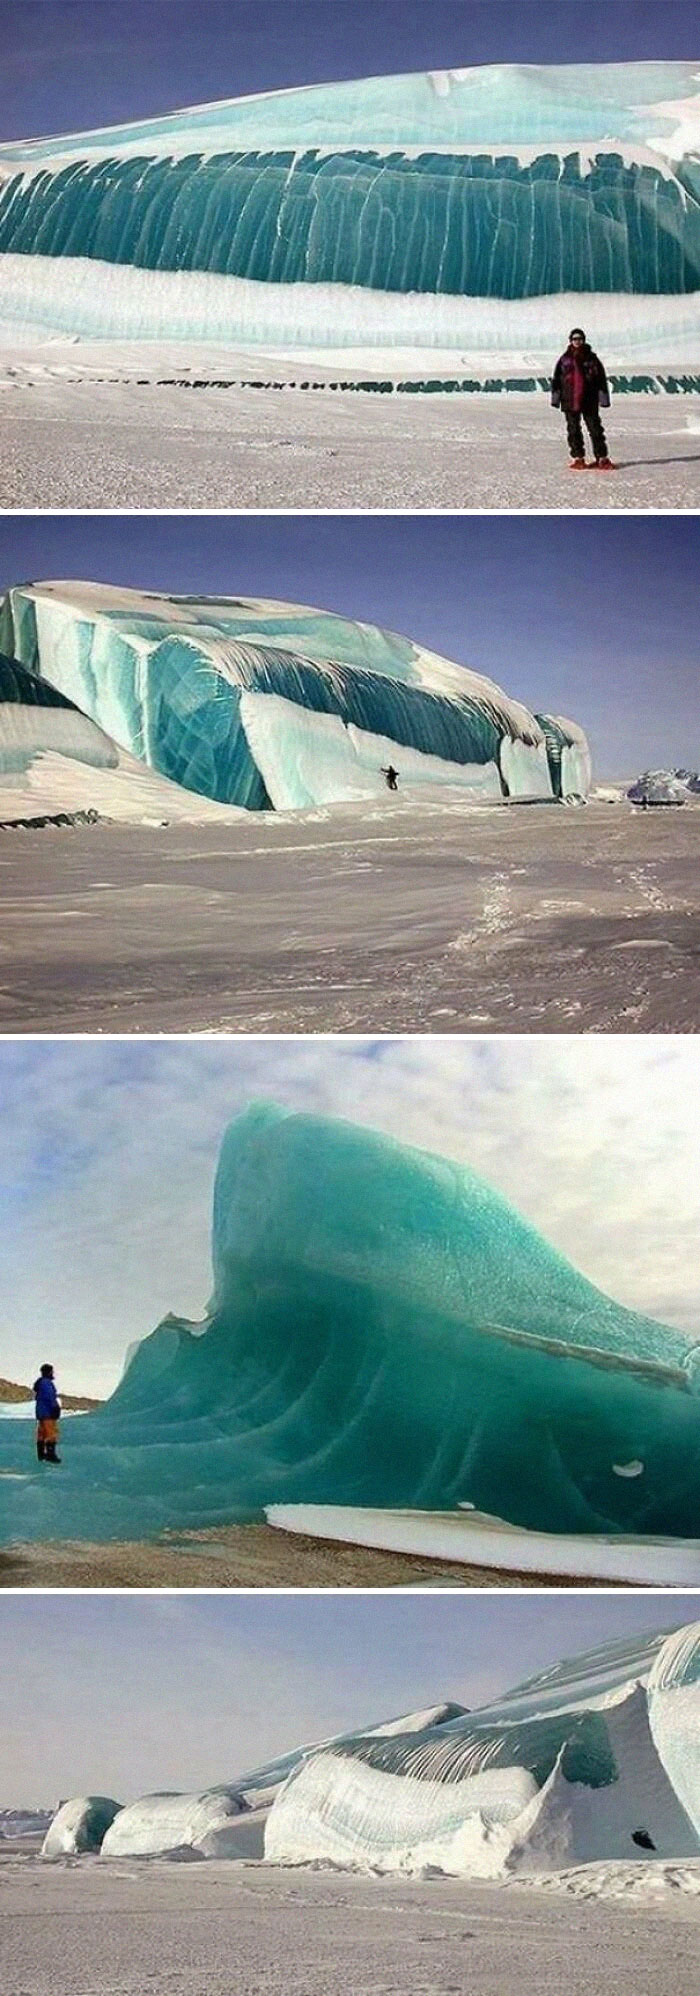 Frozen Waves In Antarctica